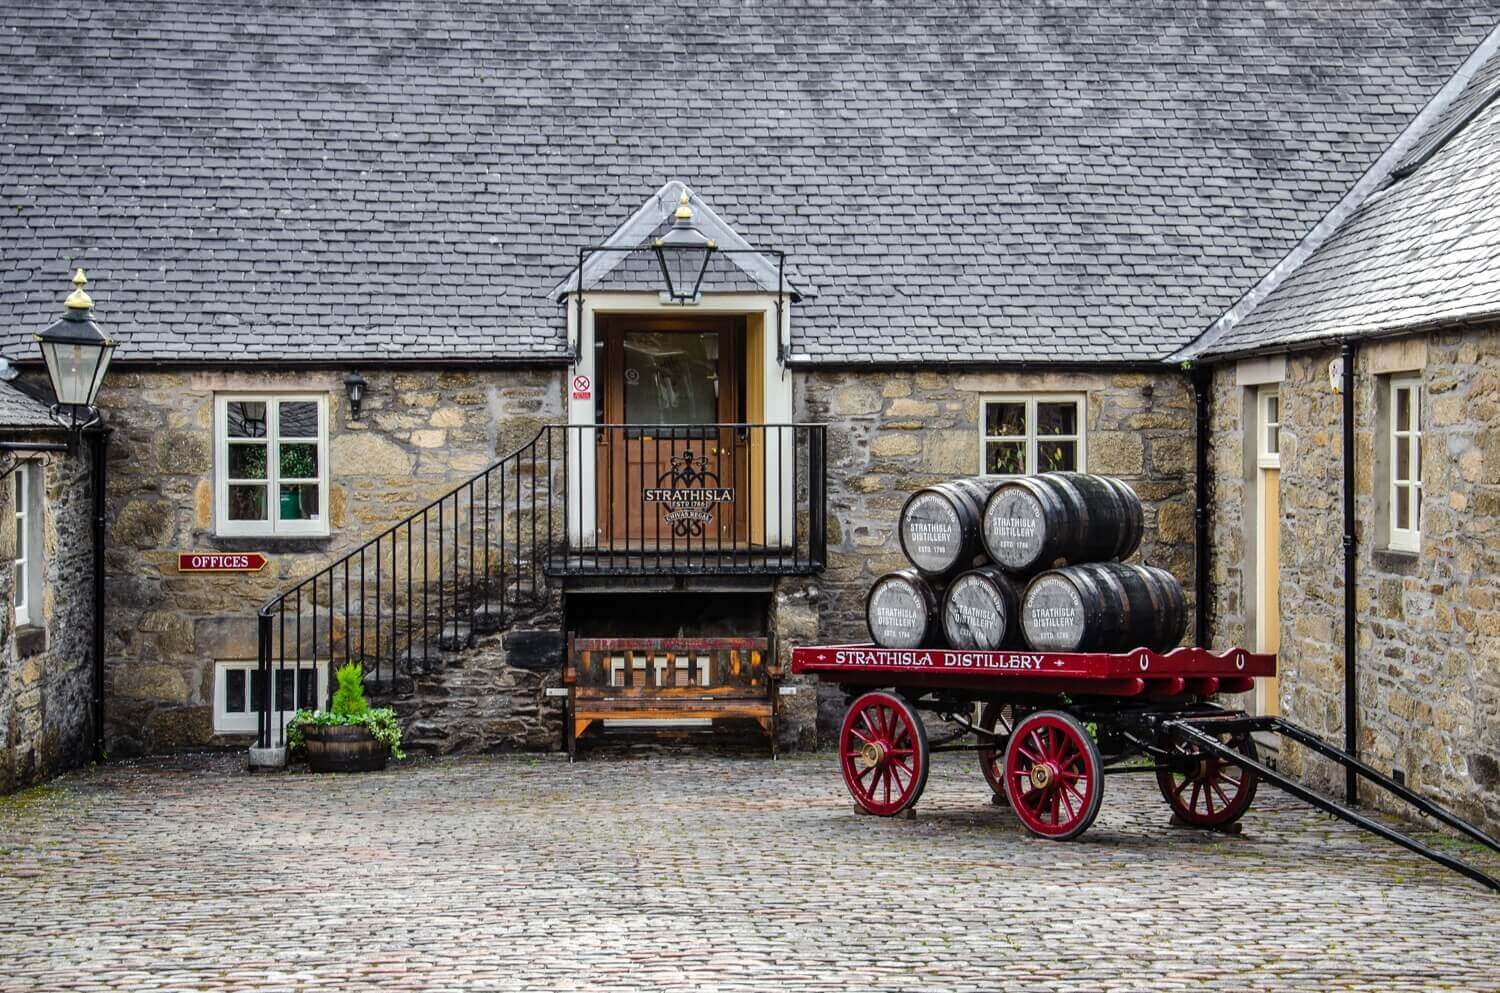 Destiladora de whisky Strathisla a orillas del río Isla. La destiladora más antigua del norte de Escocia. Tour de whisky en Escocia.